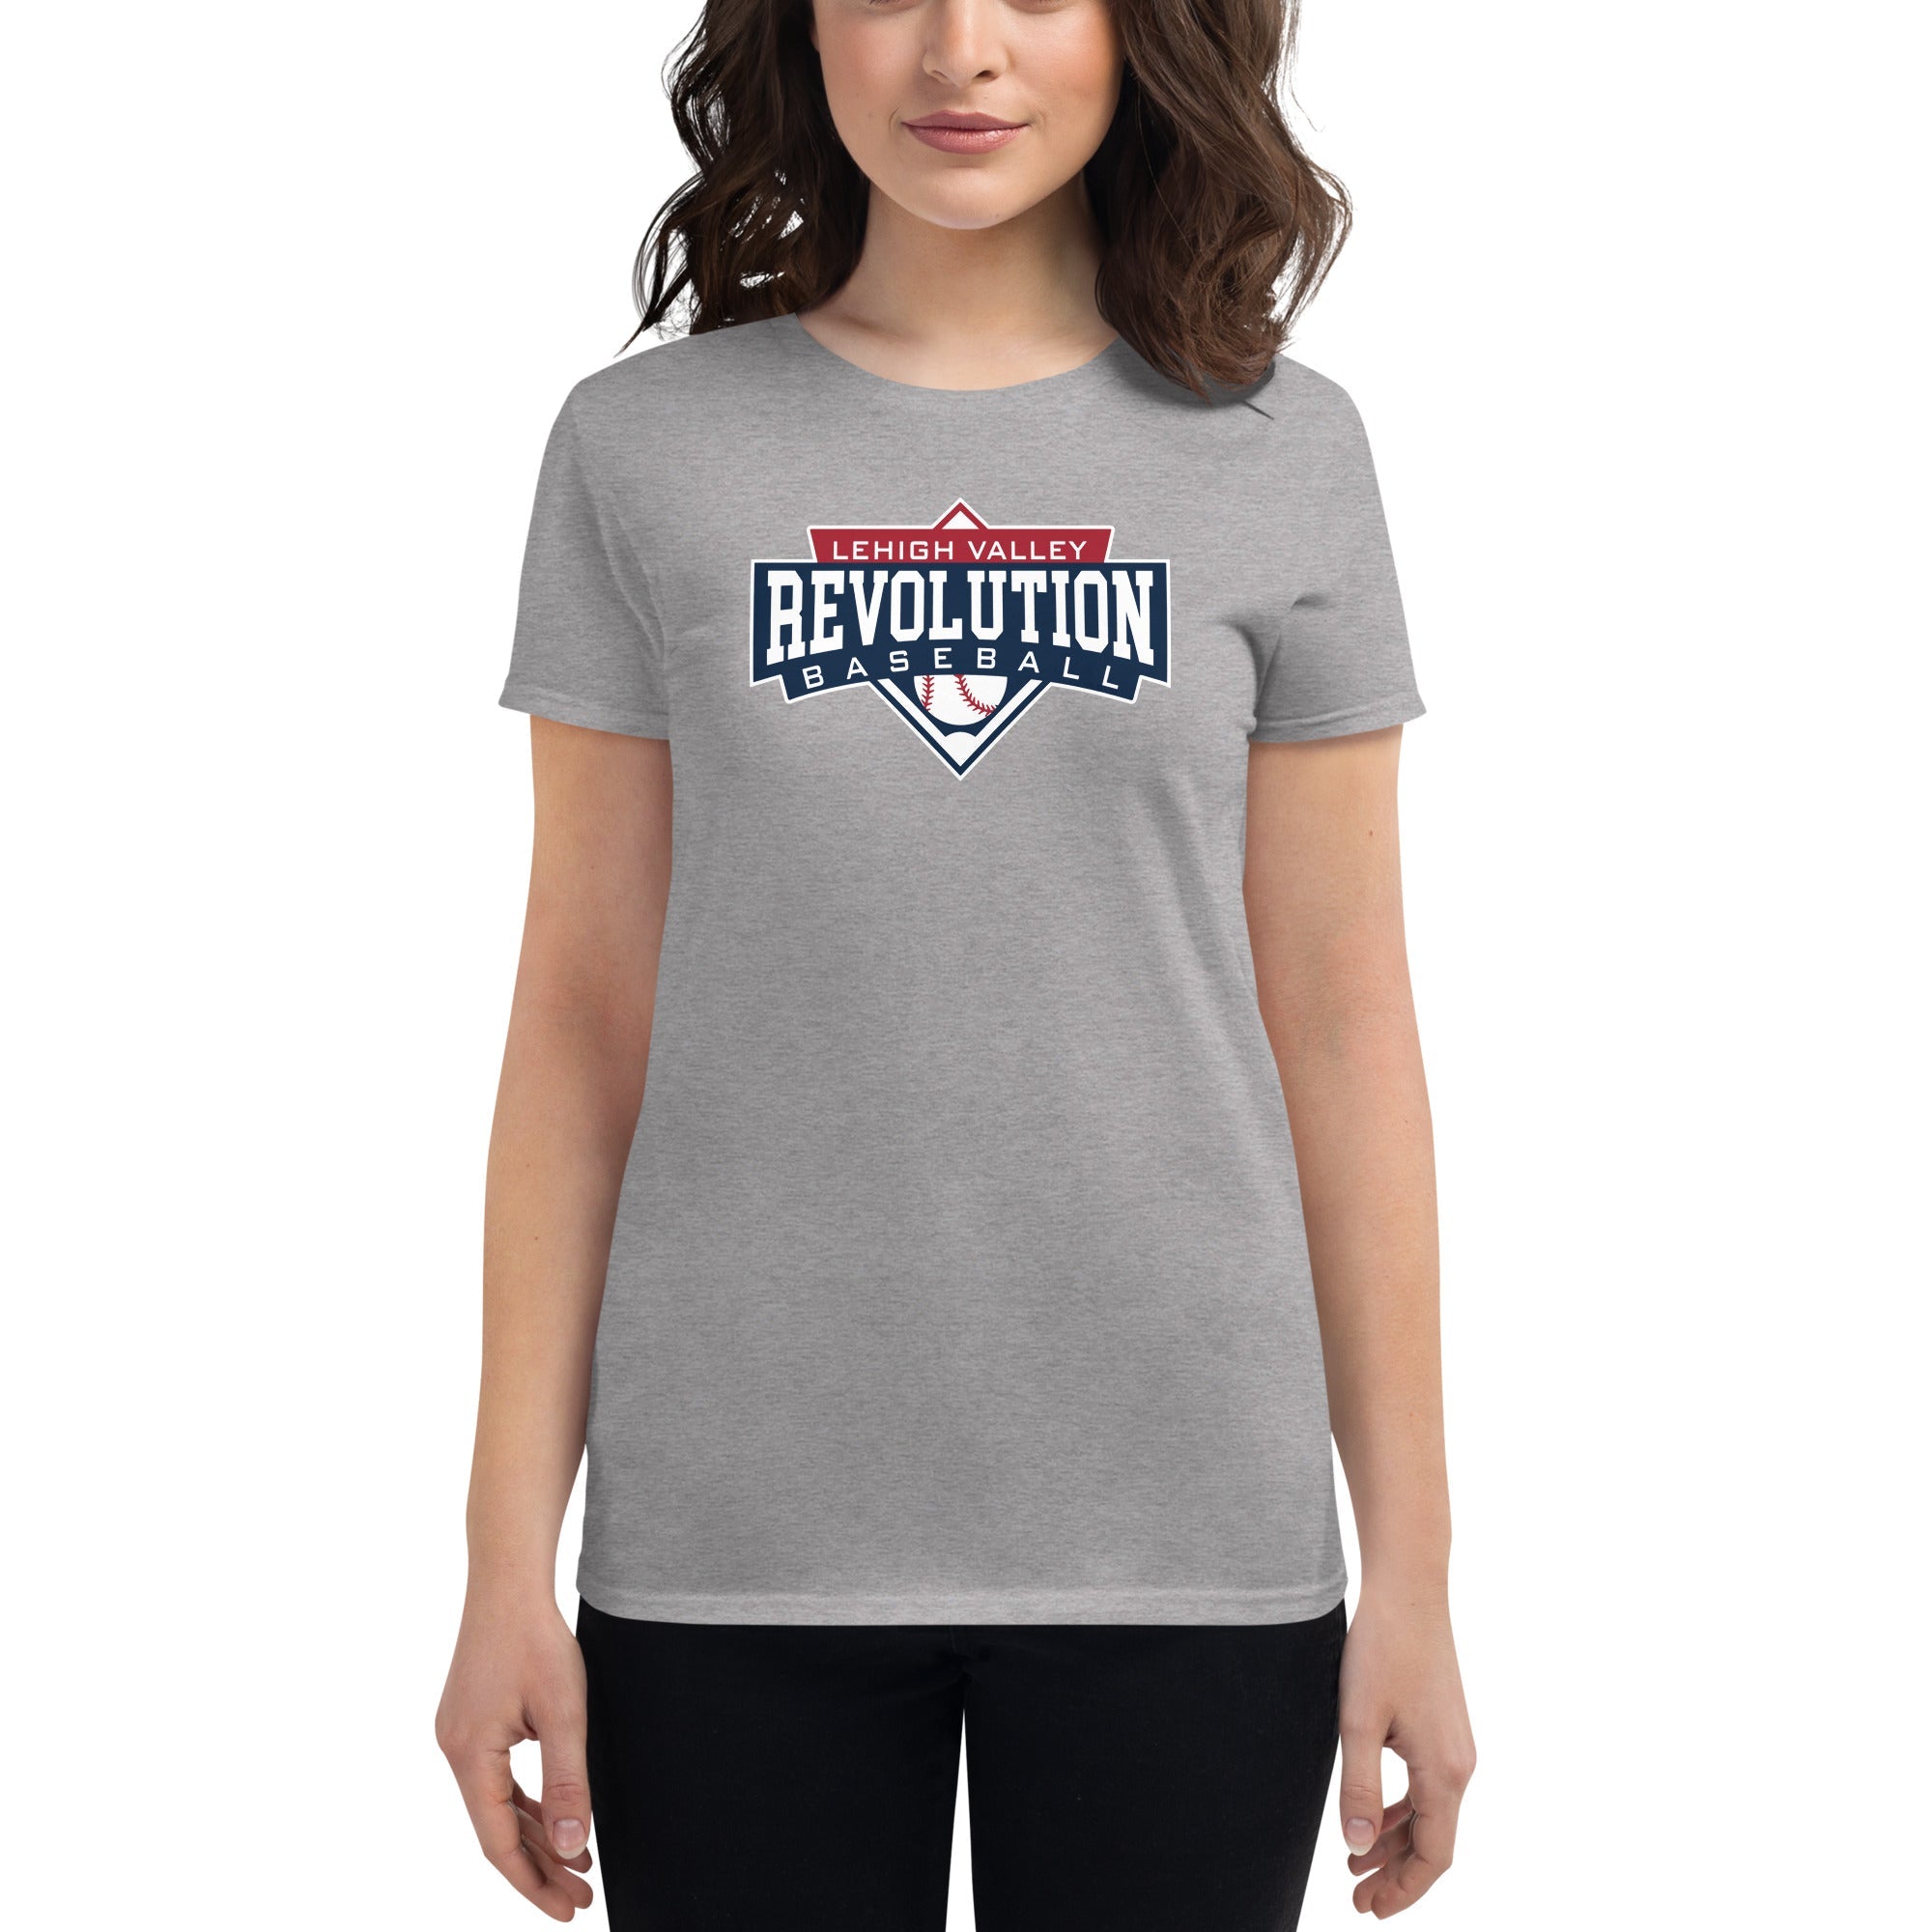 LV REV Women's short sleeve t-shirt